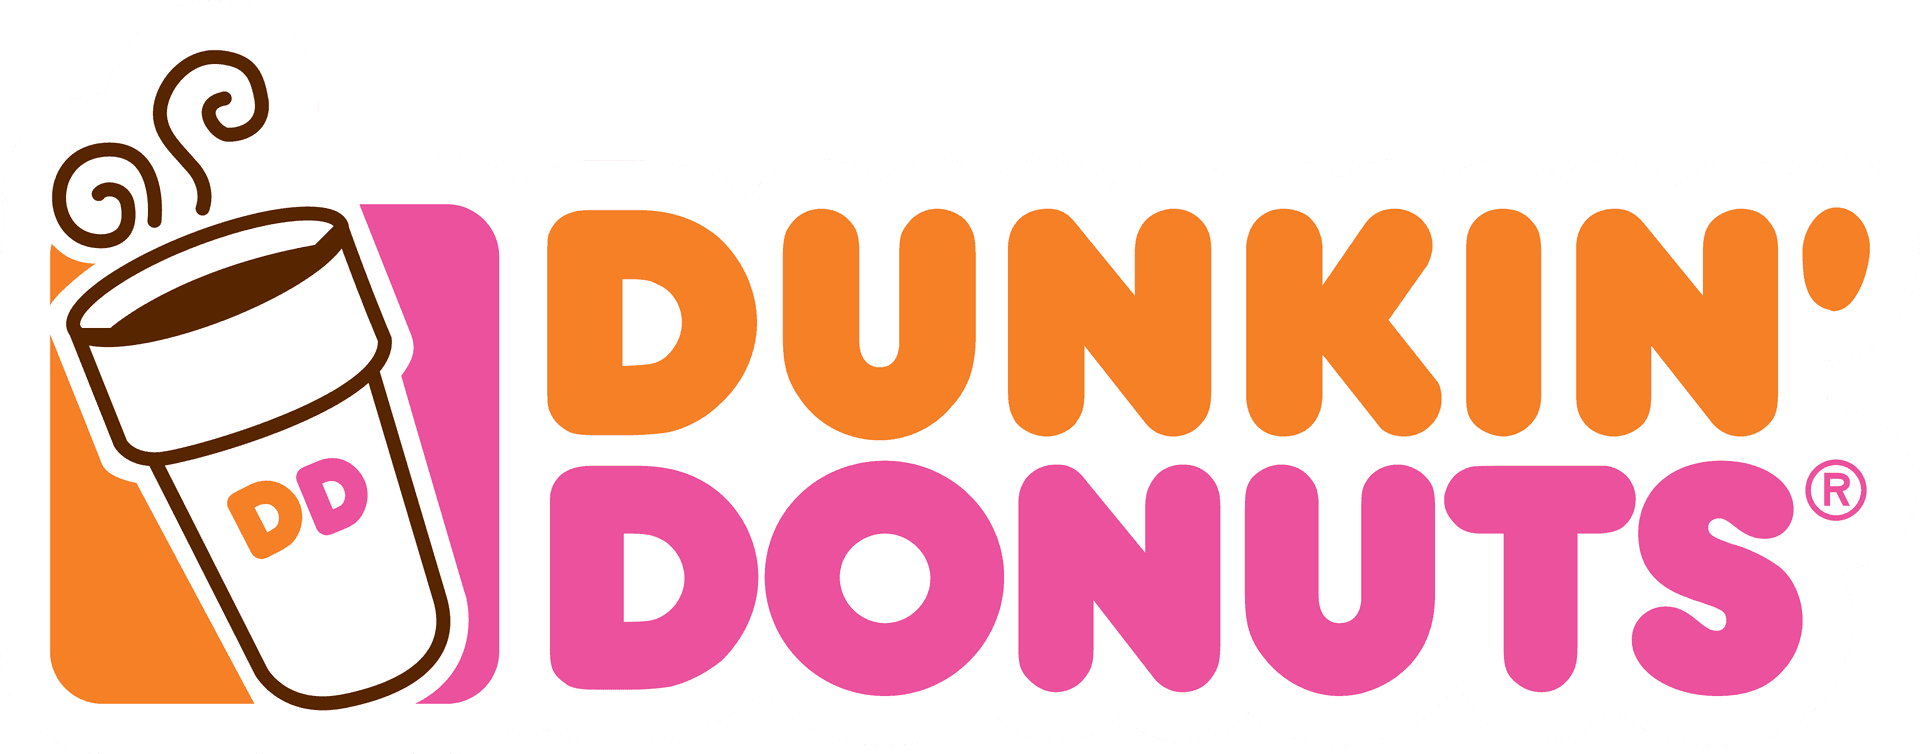 ¡deliciosamentedeliciosos Dunkin Donuts!